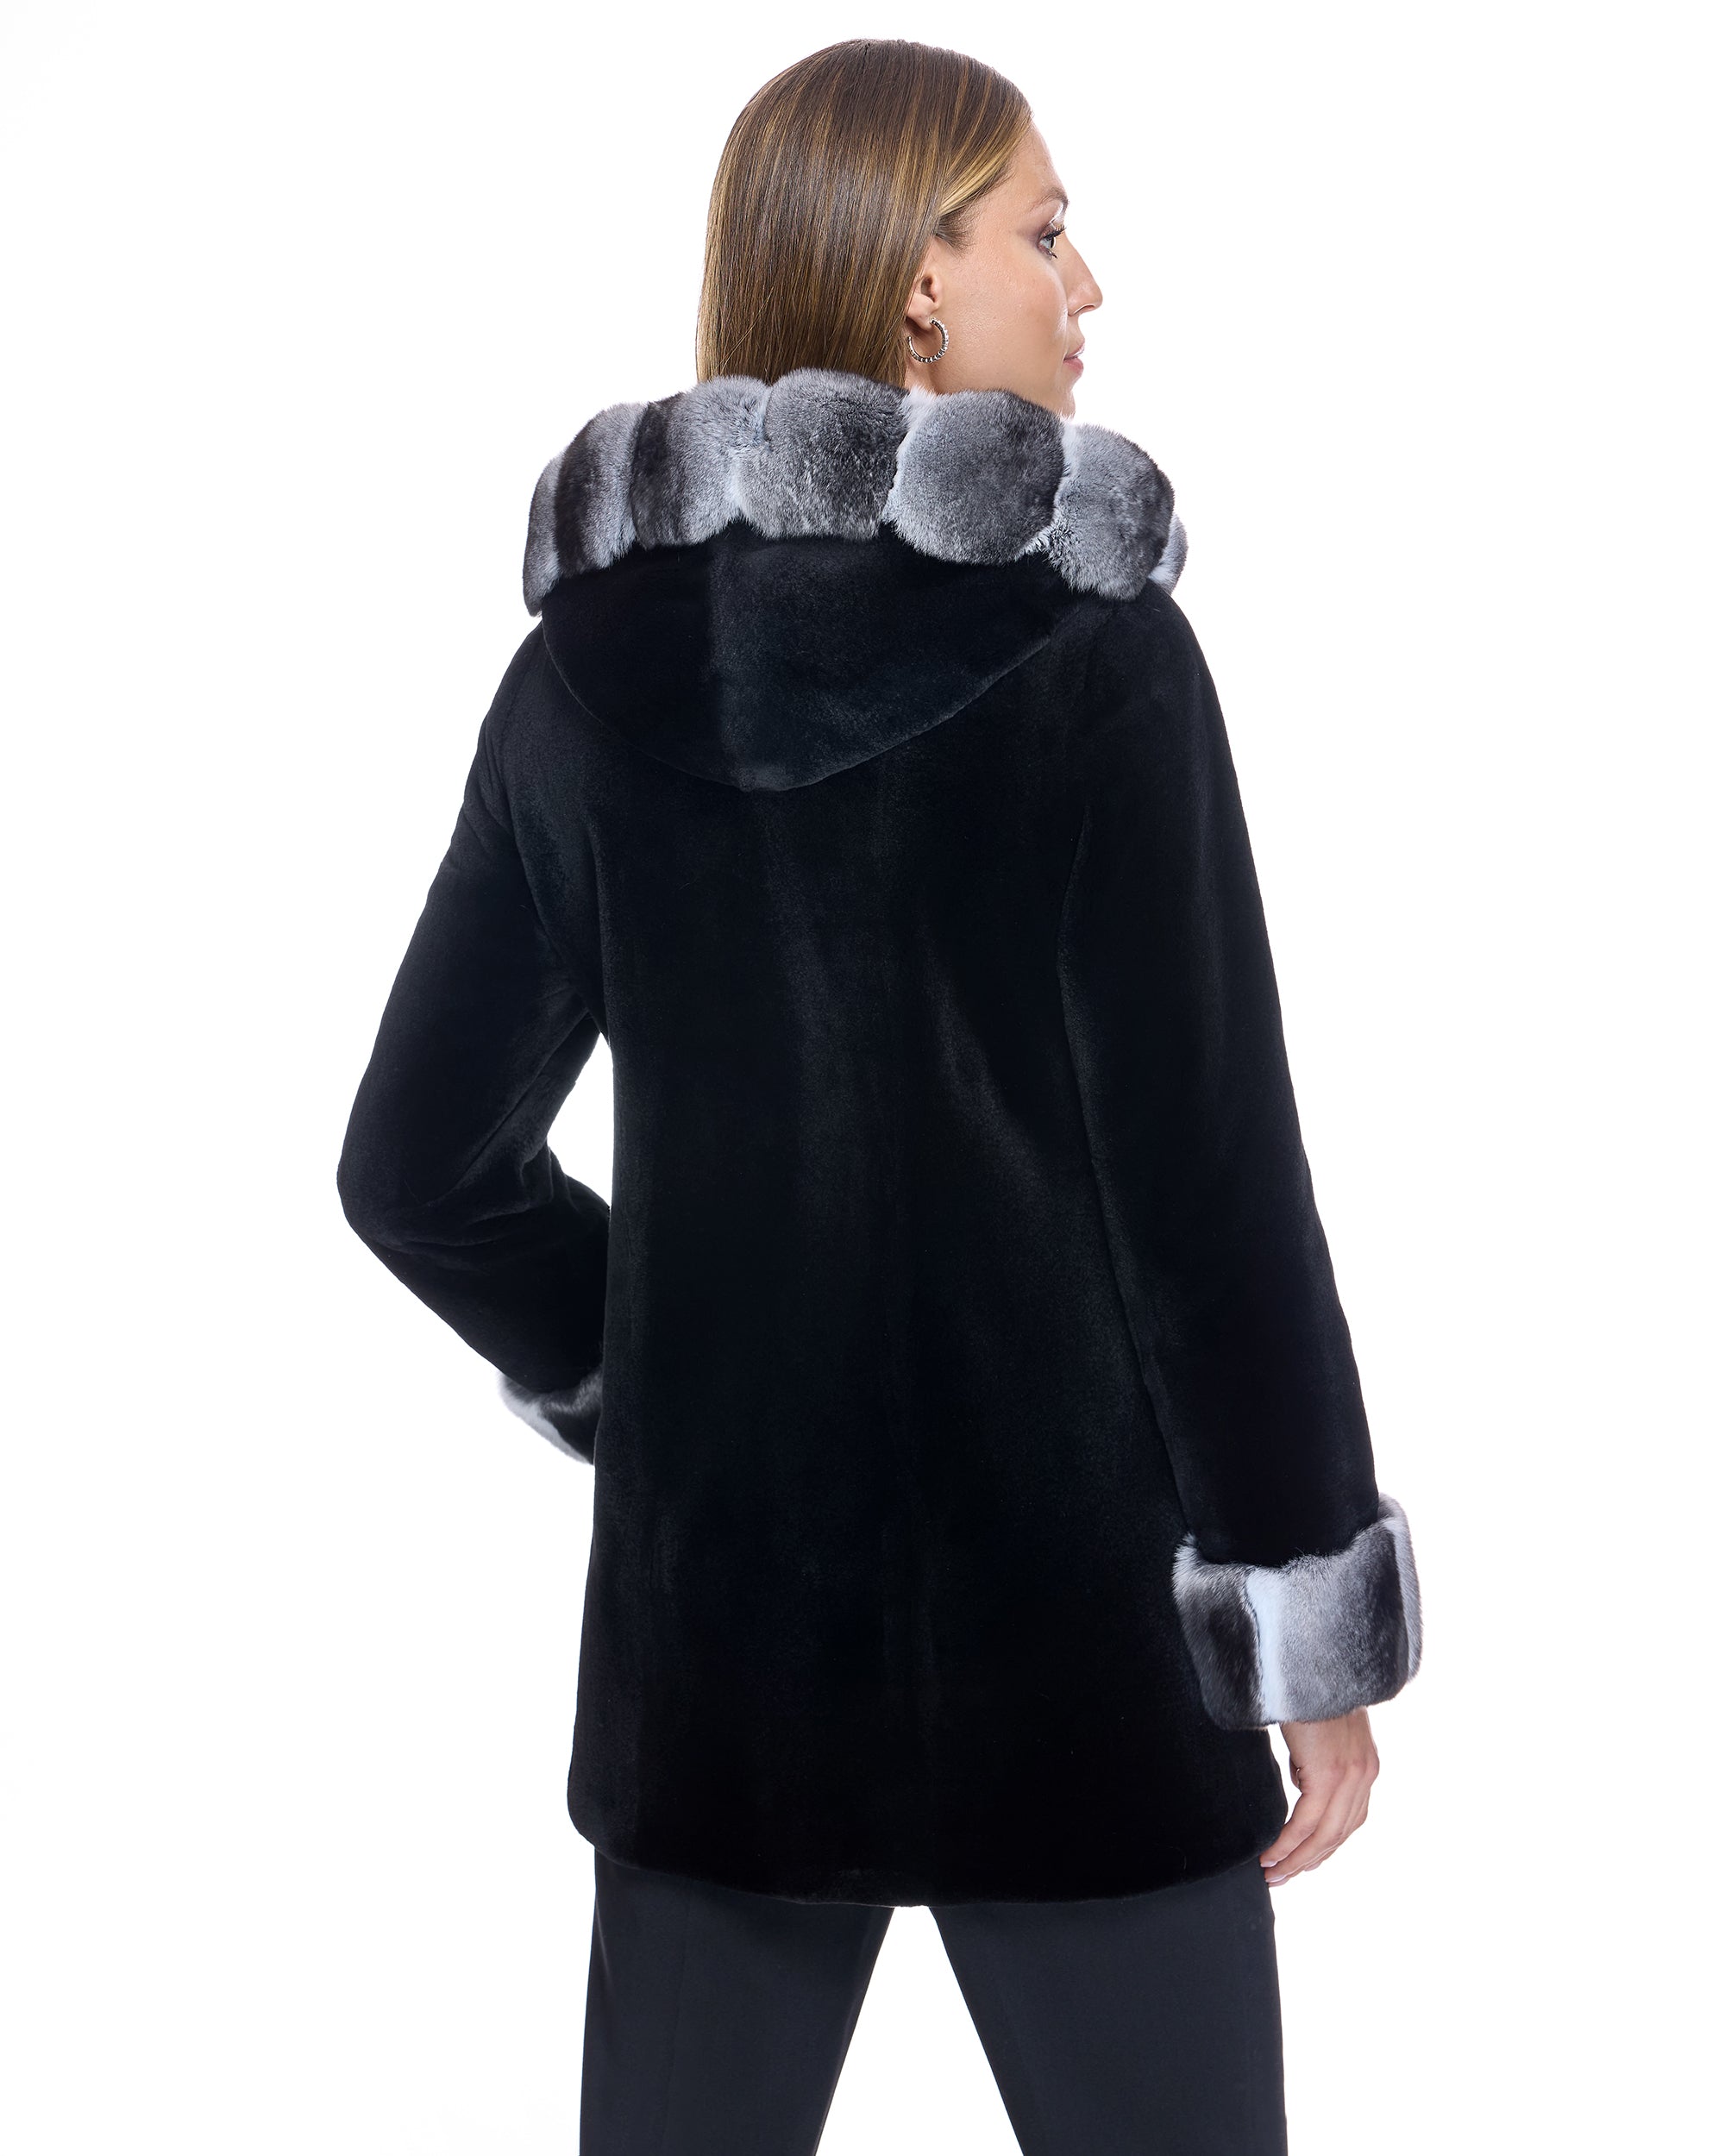 Sable Fur Coats Jackets – Maximilian